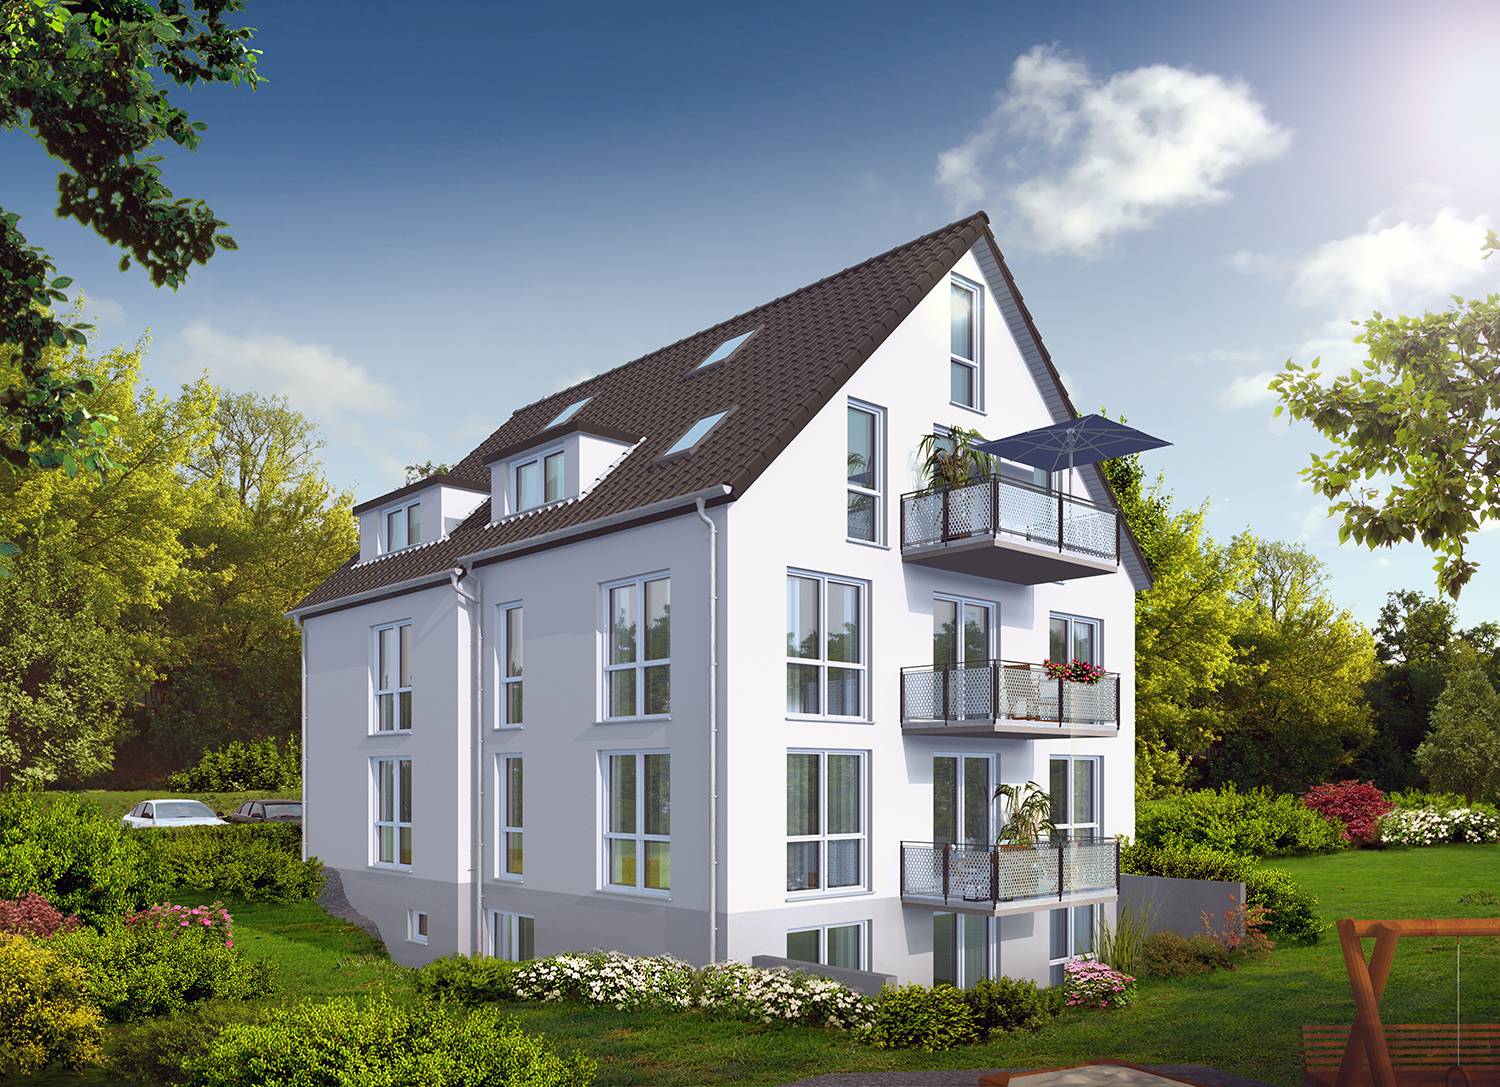 Architekturvisualisierung Perspektive Terrassenseite mit Spielplatz Neubau Mehrfamilienhaus in Filderstadt-Bonlanden, Dinkelstr. 4, für Bemmerer Wohnbau & Immobilien GmbH, Neuenstein (Jahr 2021)